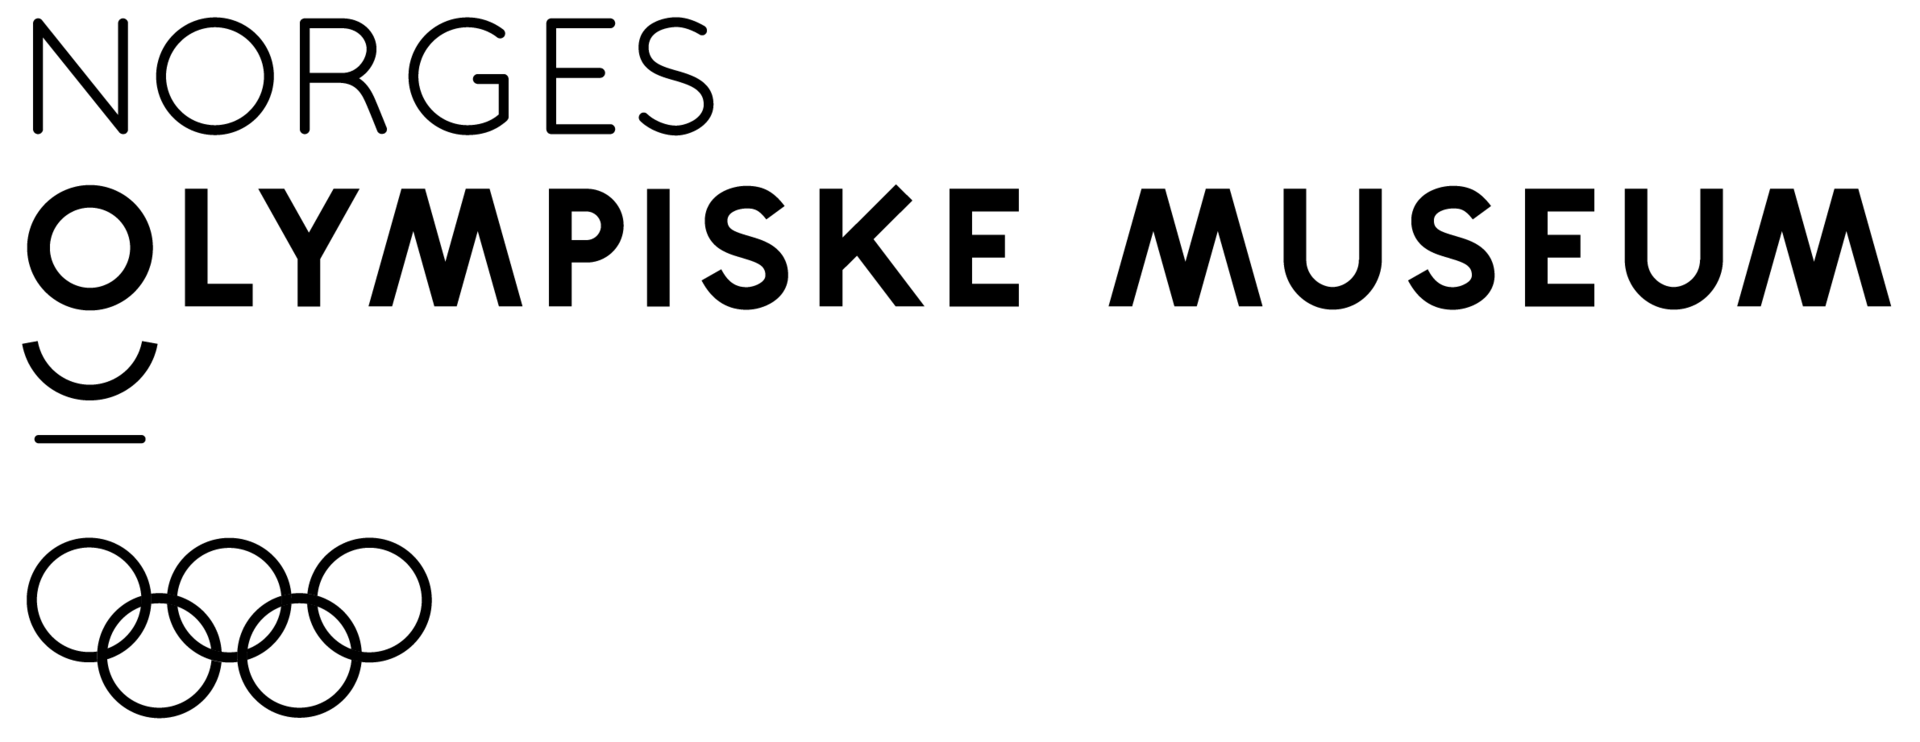 Logo for OL museum